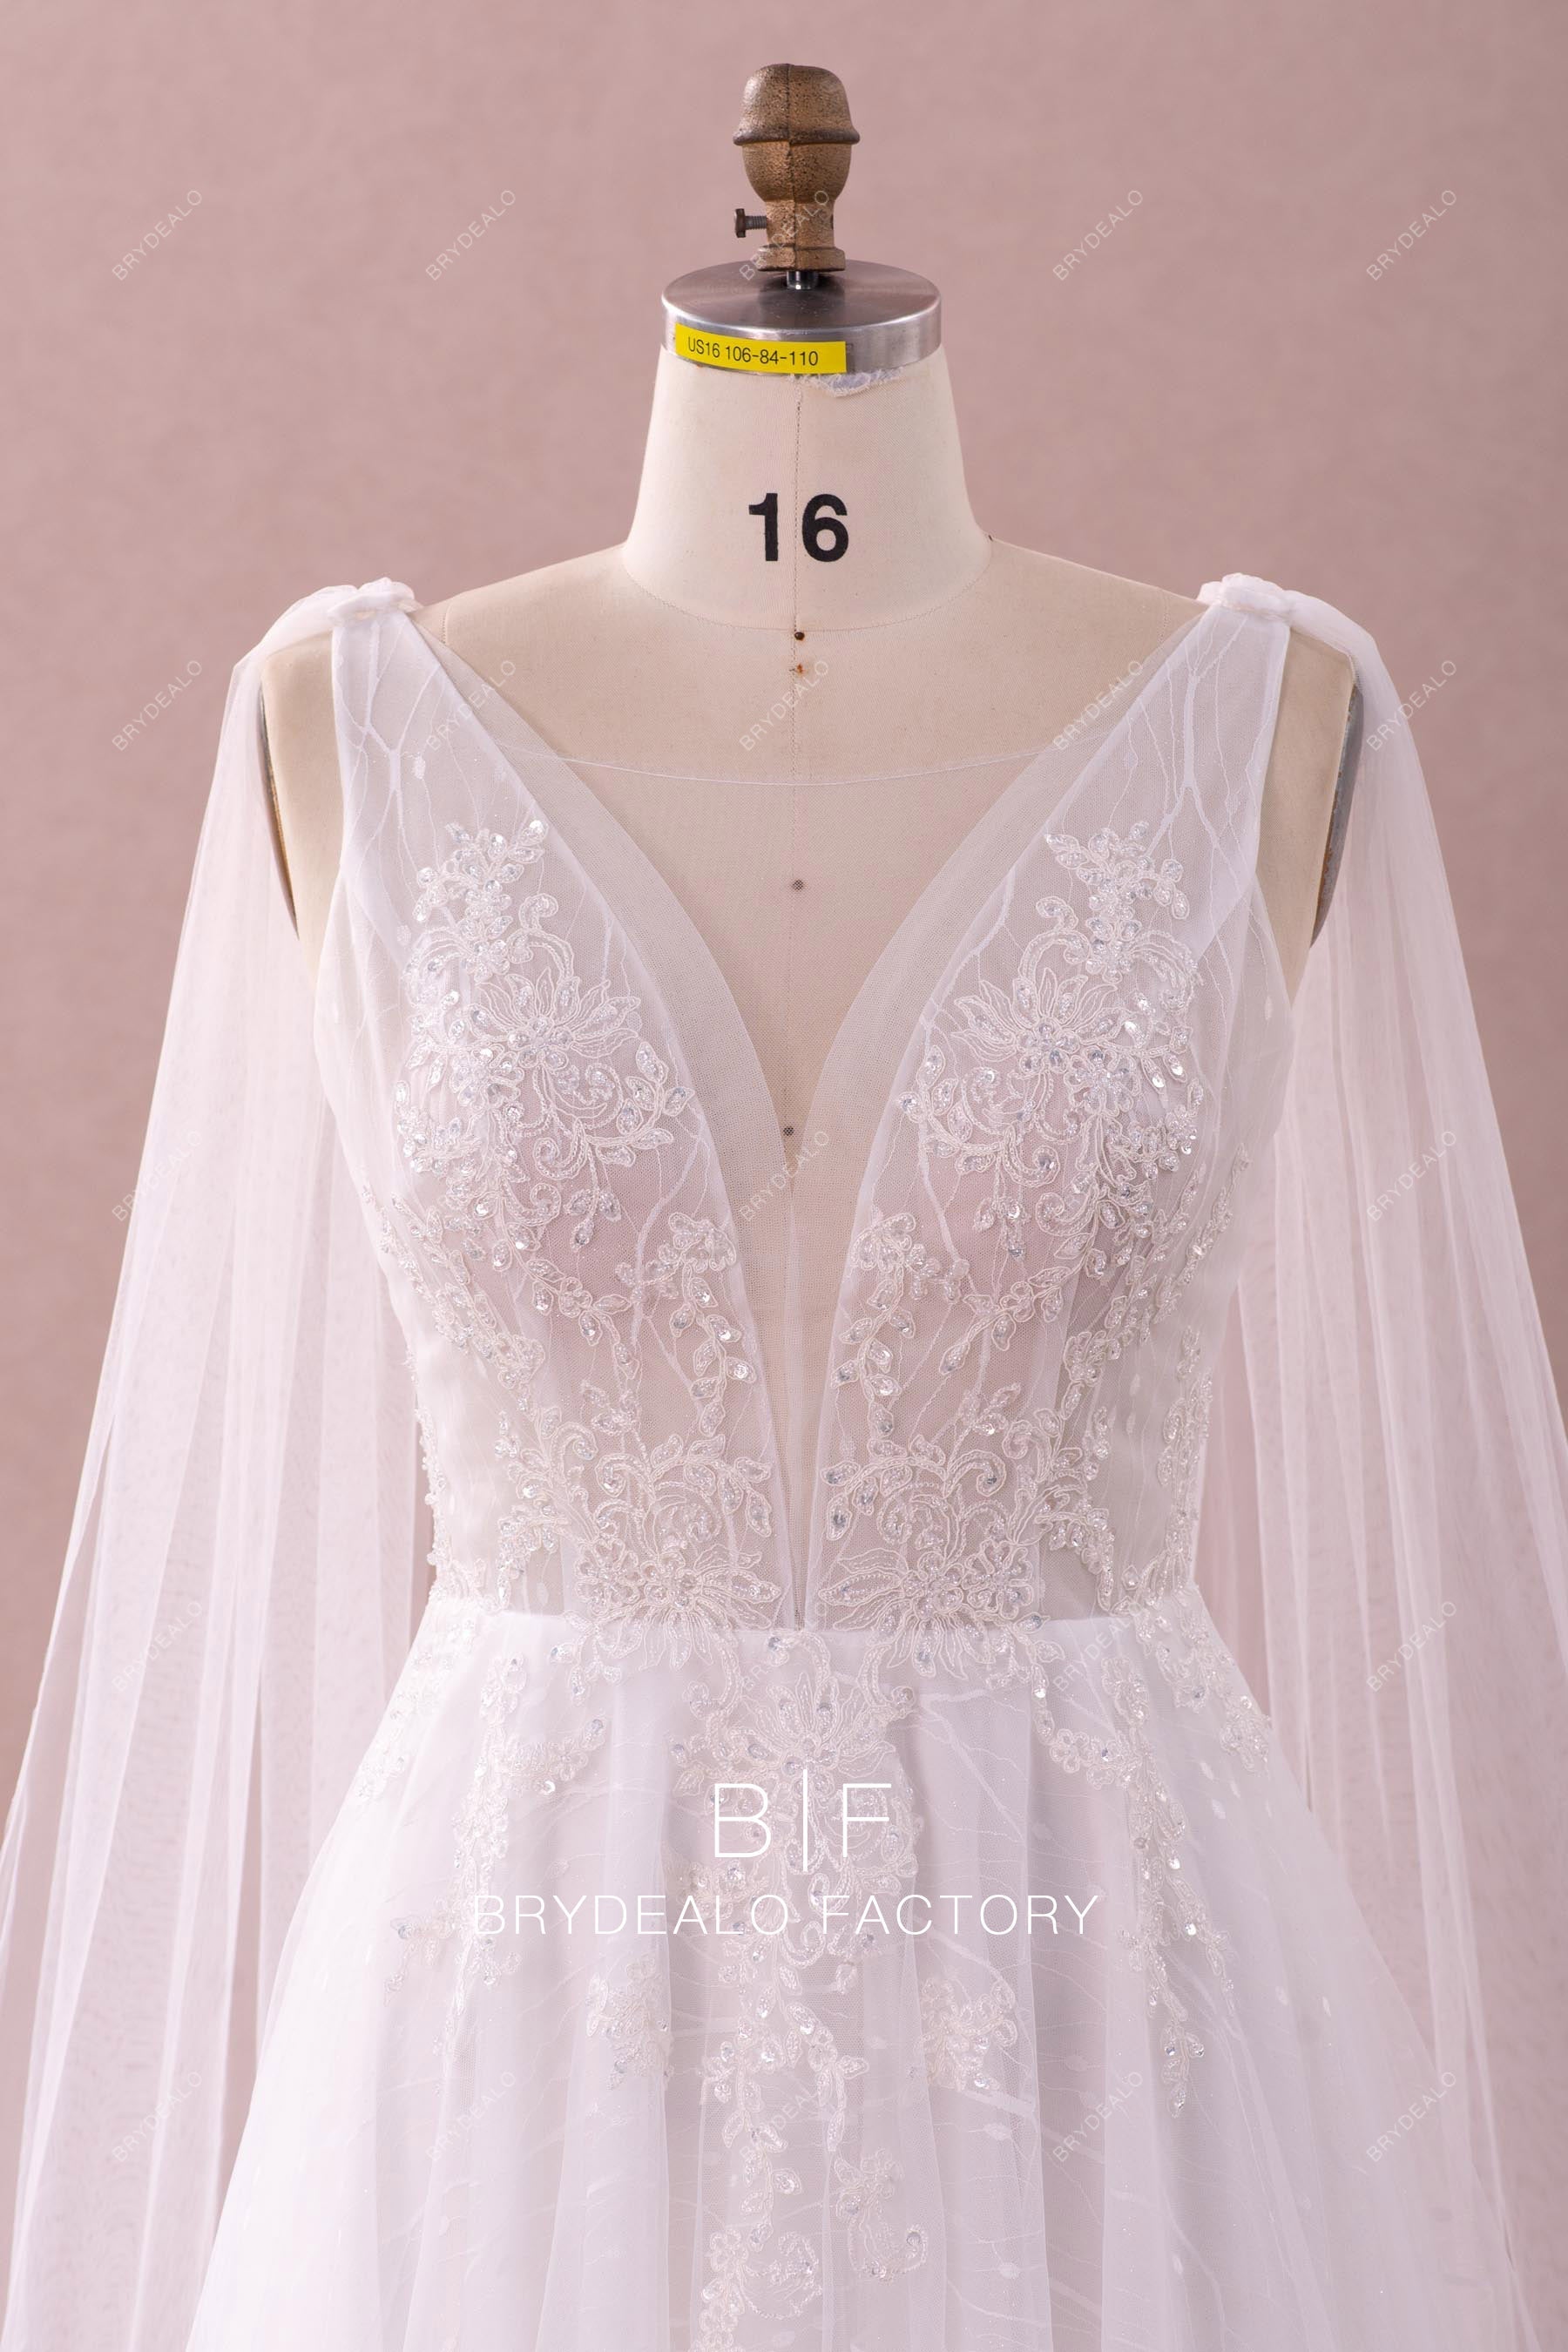 Beaded lace plunging sleeveless wedding dress